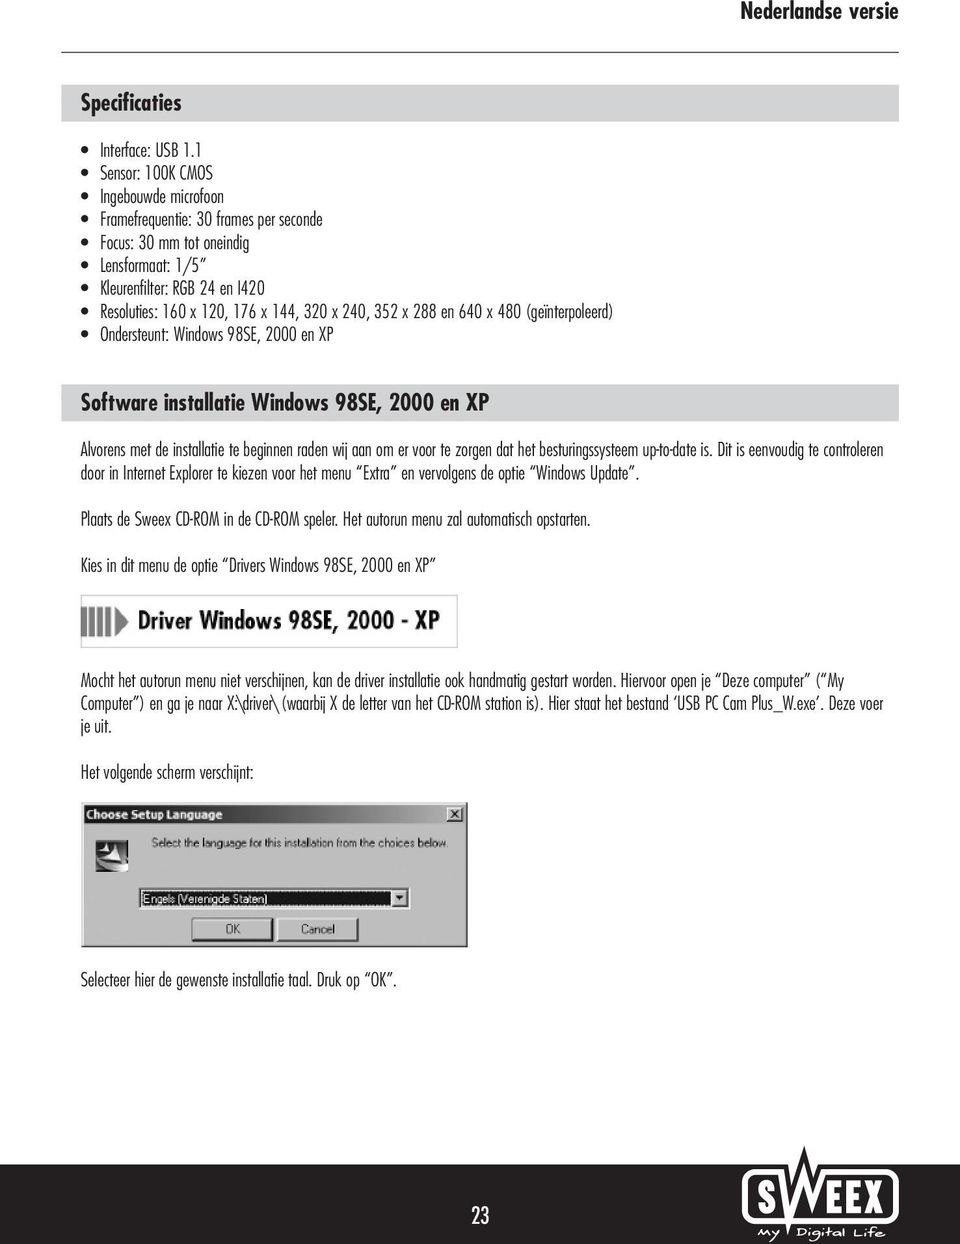 352 x 288 en 640 x 480 (geïnterpoleerd) Ondersteunt: Windows 98SE, 2000 en XP Software installatie Windows 98SE, 2000 en XP Alvorens met de installatie te beginnen raden wij aan om er voor te zorgen